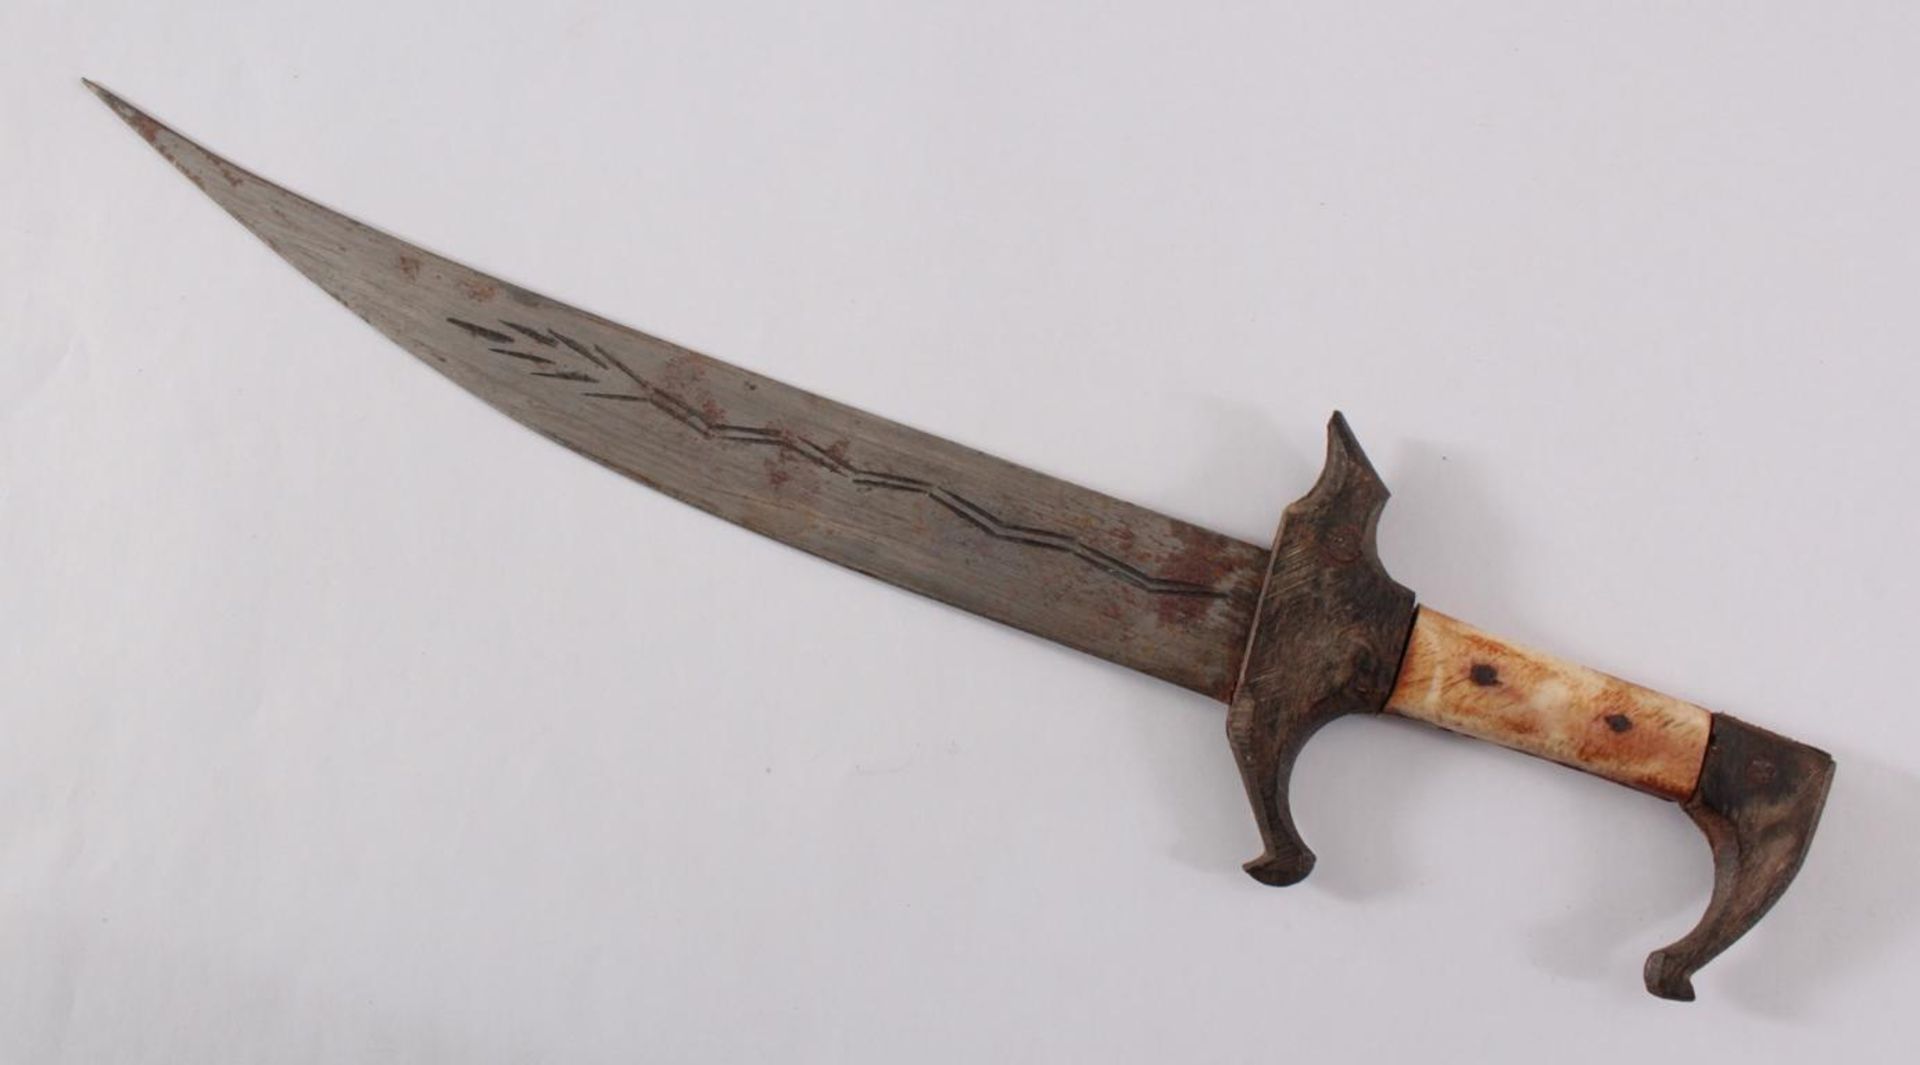 Antikes MesserGravierte Stahlklinge, Griff aus geschnitztem Holz und Bein, Holzscheide, ummantelt